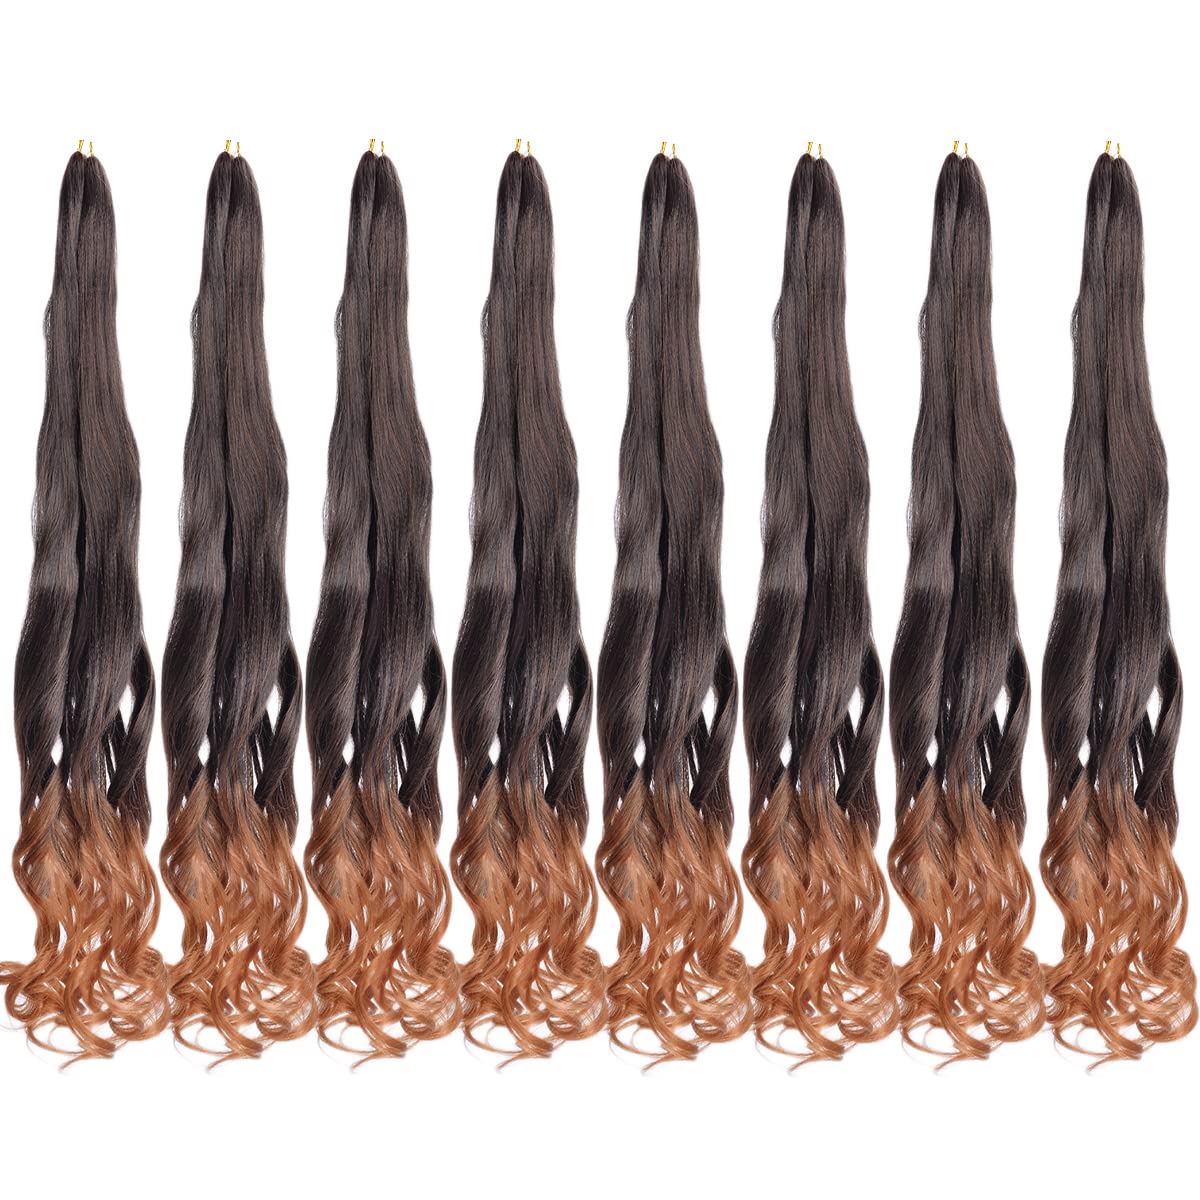 French Curls Braiding Hair Pre-stretched Braids Hair #T30 Color Brown Hair Extensions E Z Braiding Hair